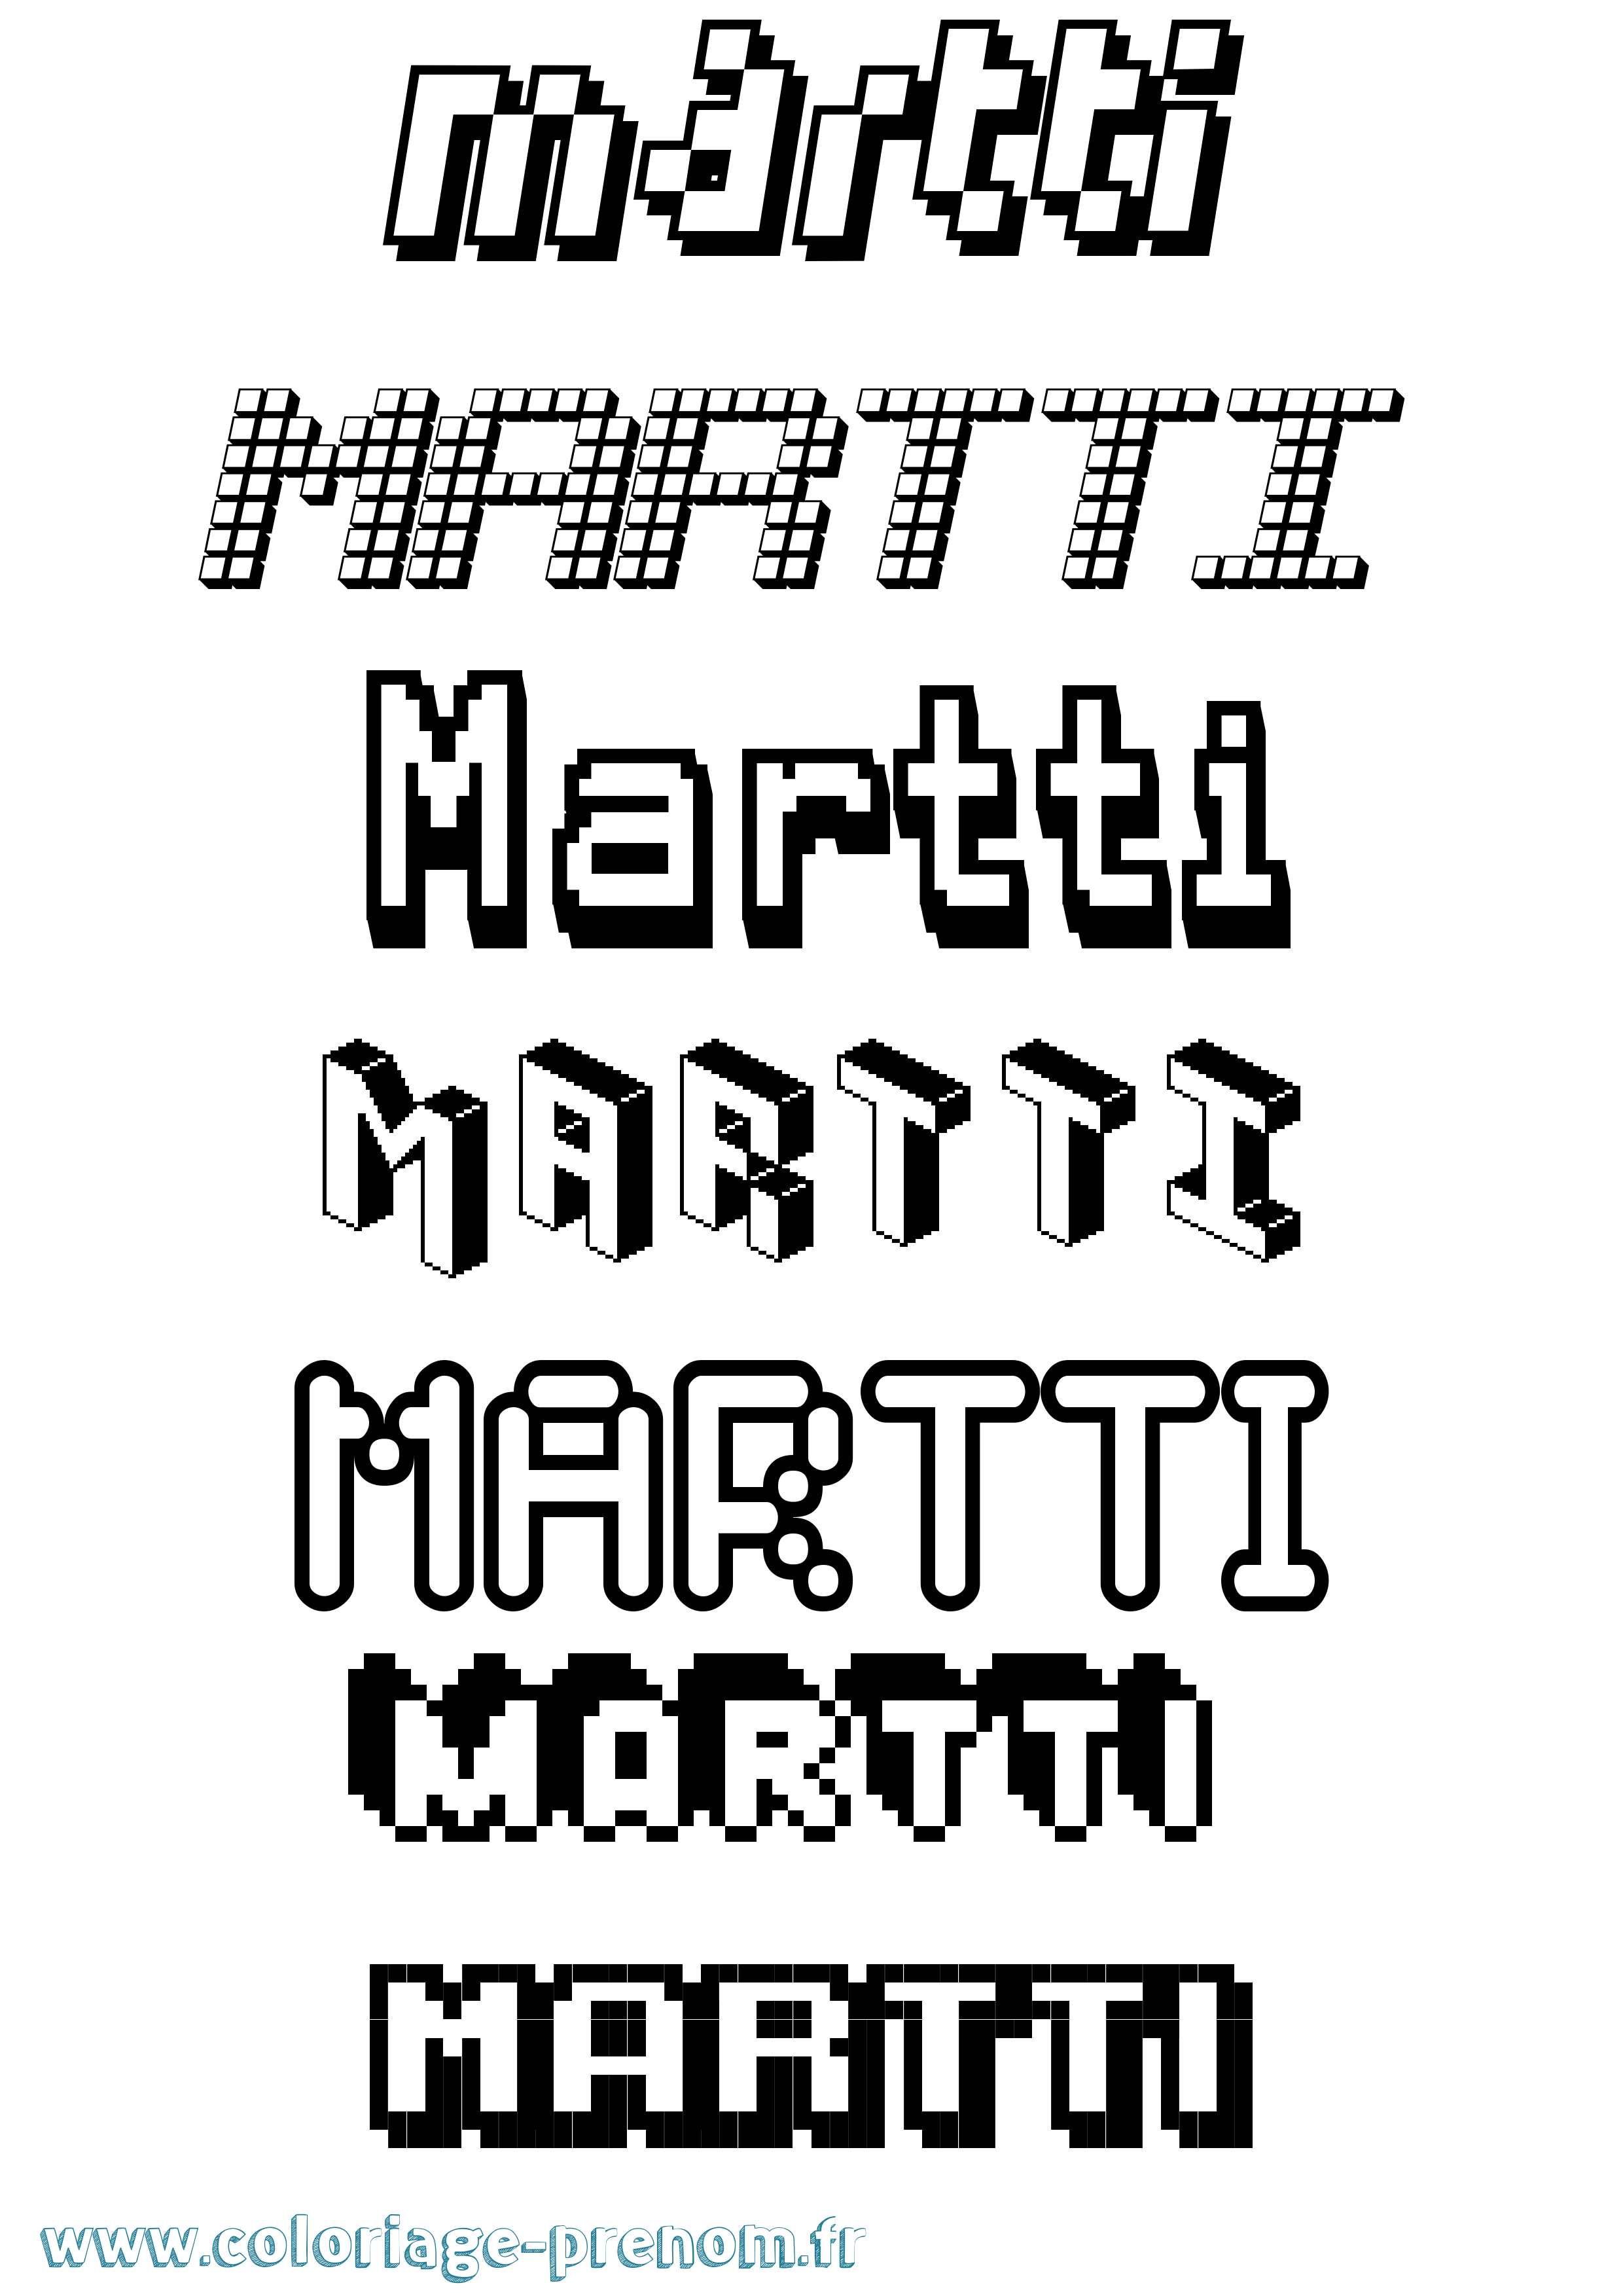 Coloriage prénom Martti Pixel